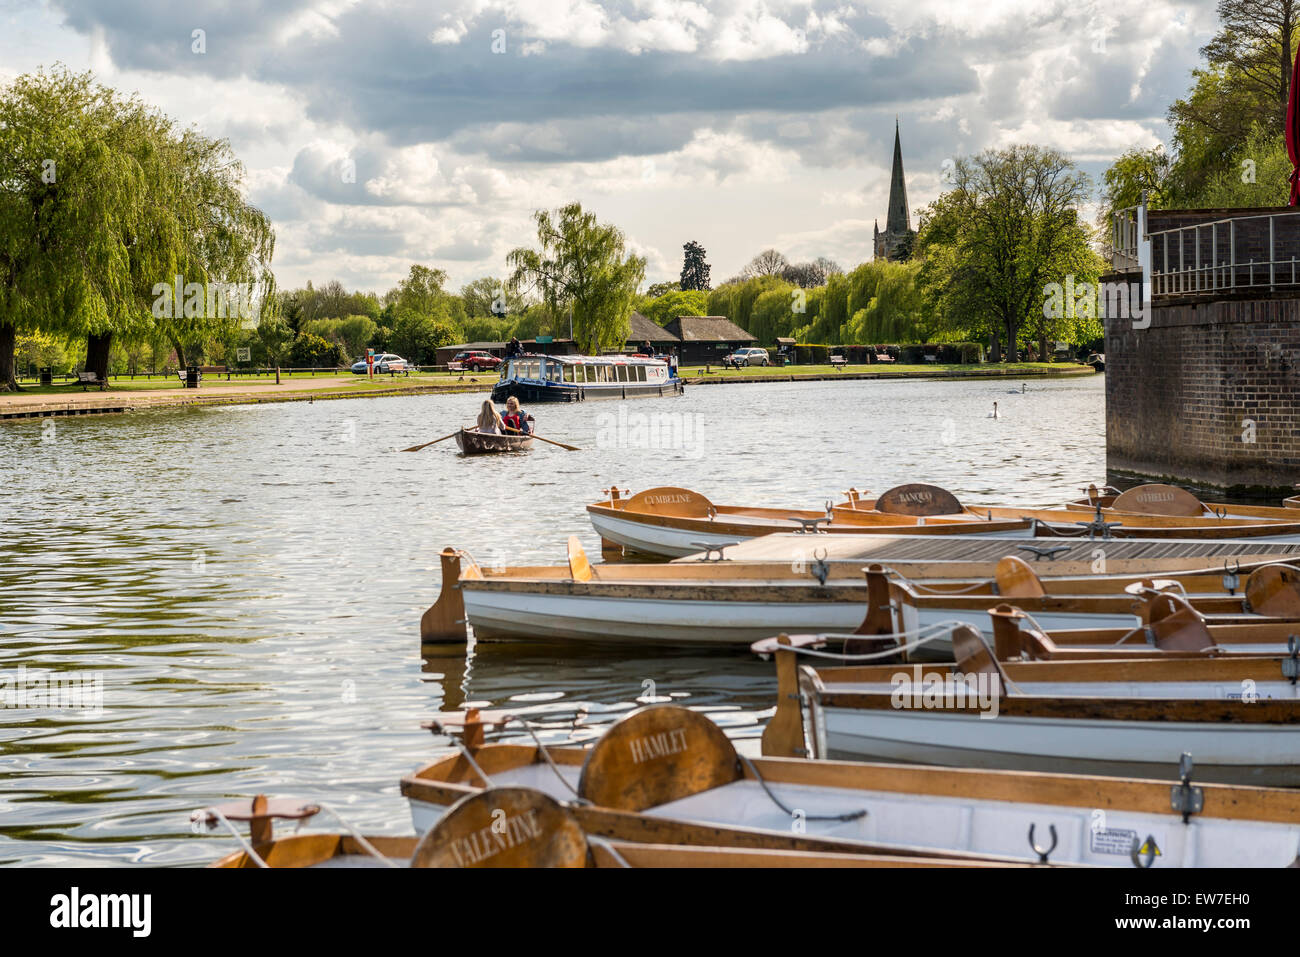 Der Fluss Avon in Stratford-upon-Avon ist beliebt bei Touristen für Flusskreuzfahrten und Sportboote Stockfoto